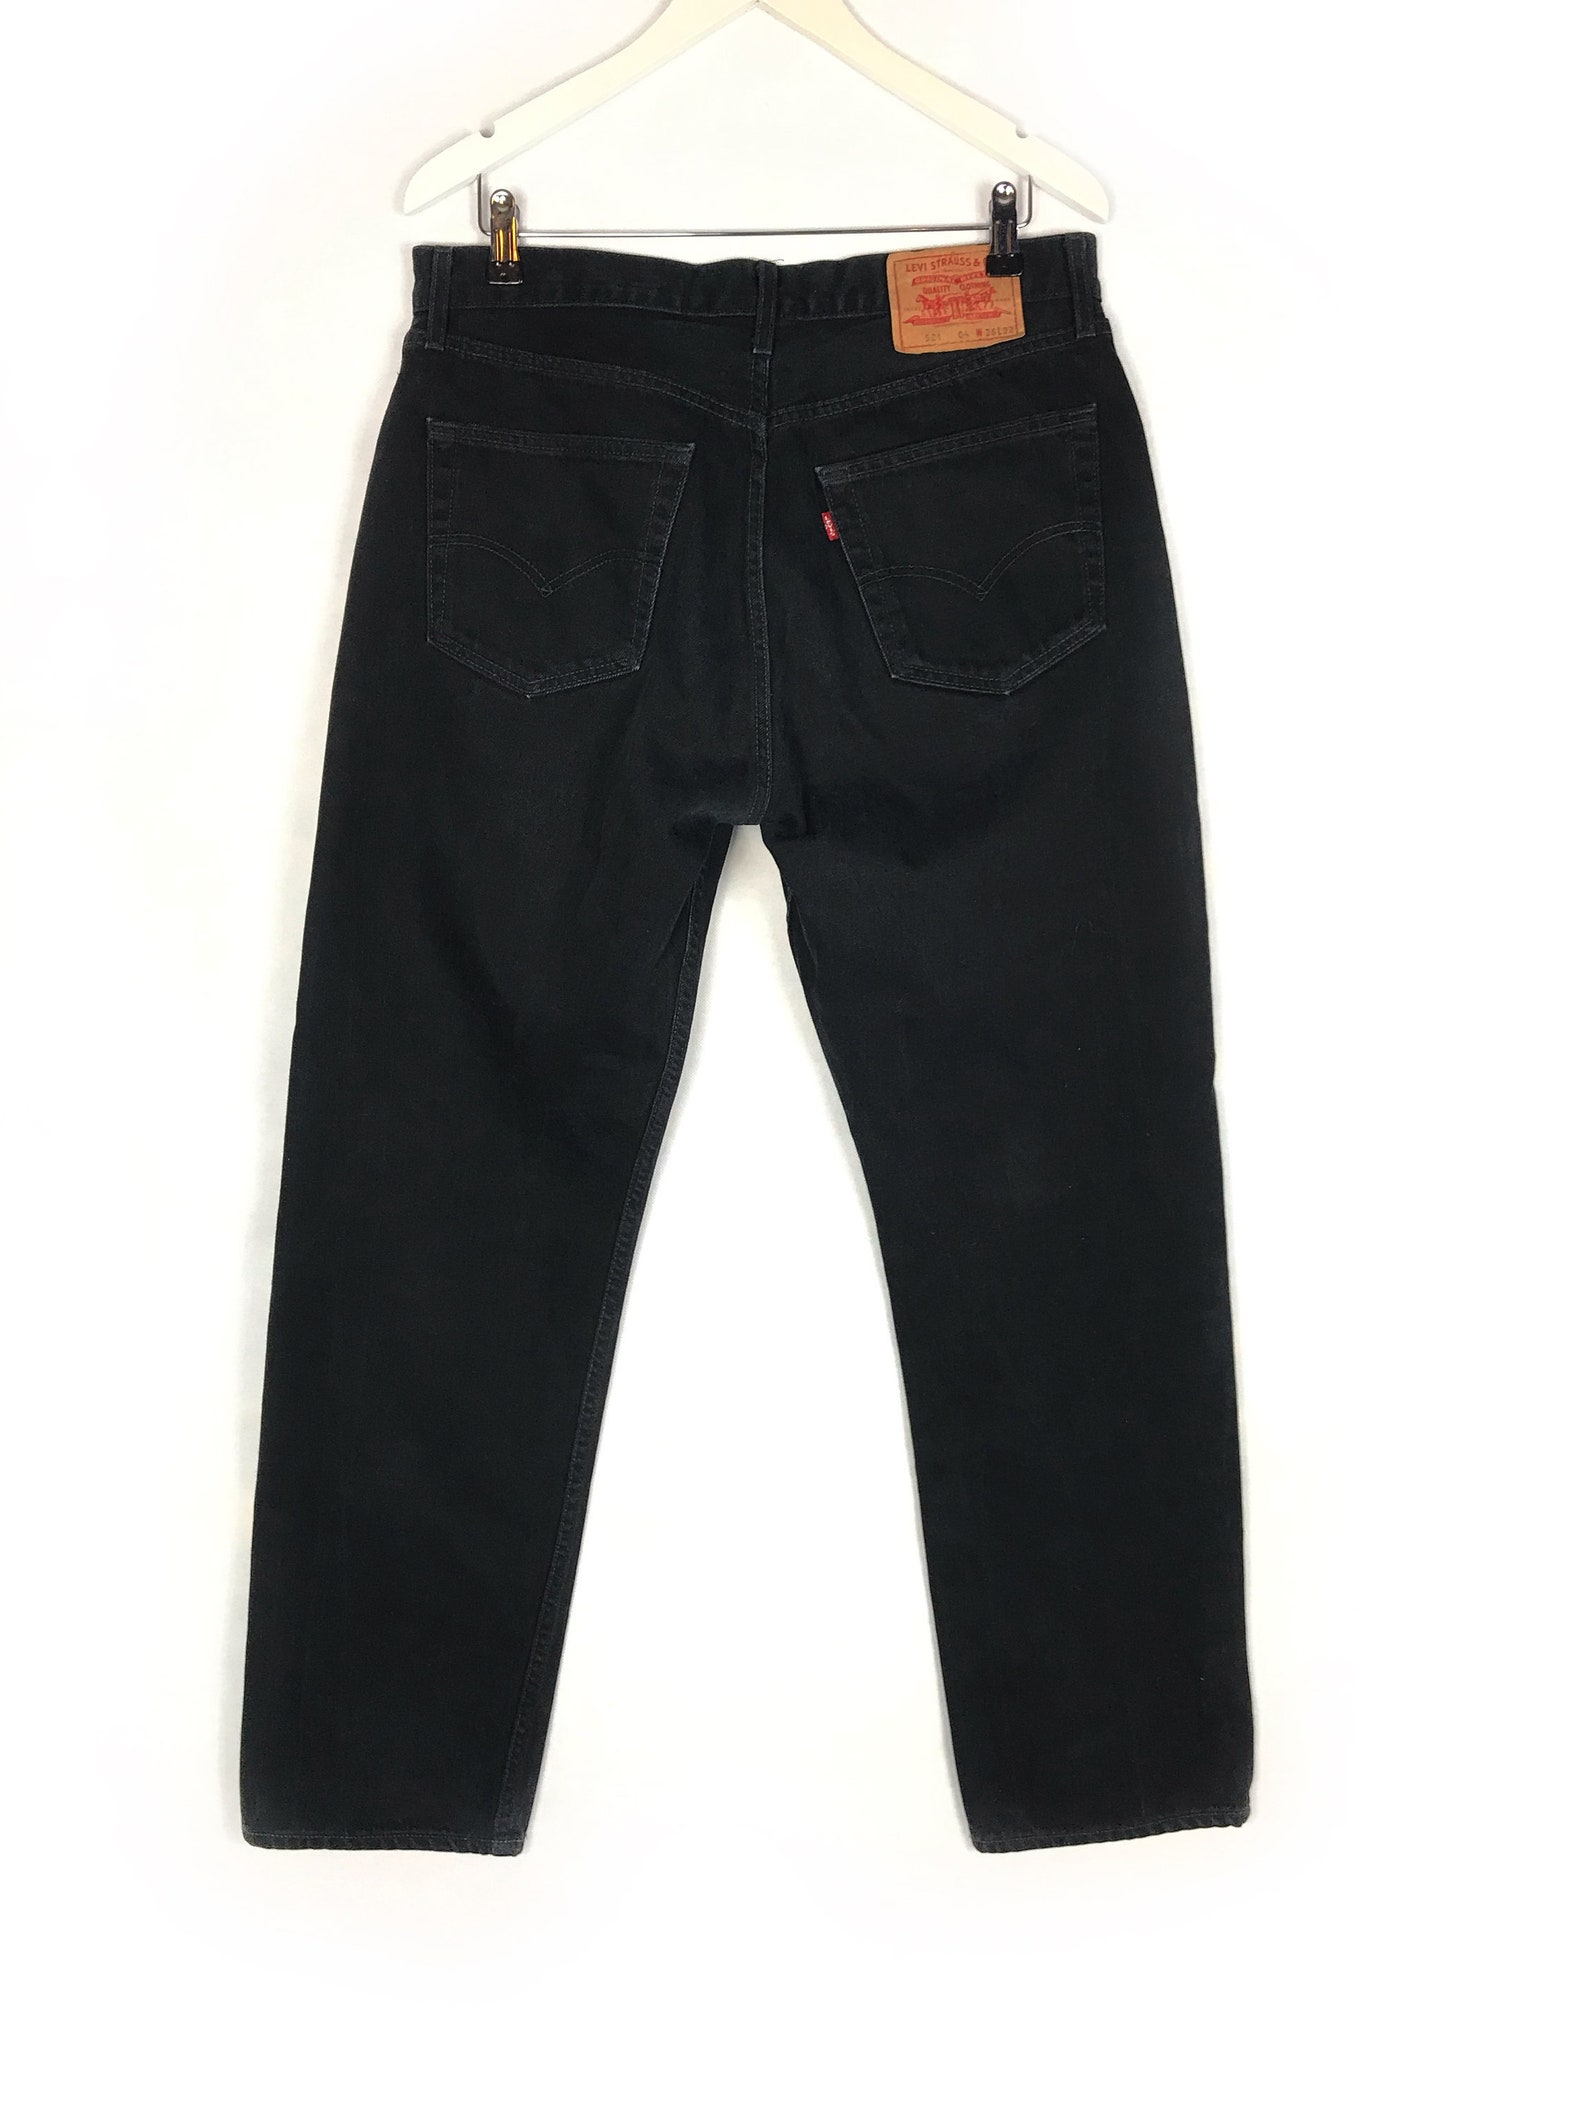 Vintage Levi's 521 Men's Jeans | Etsy